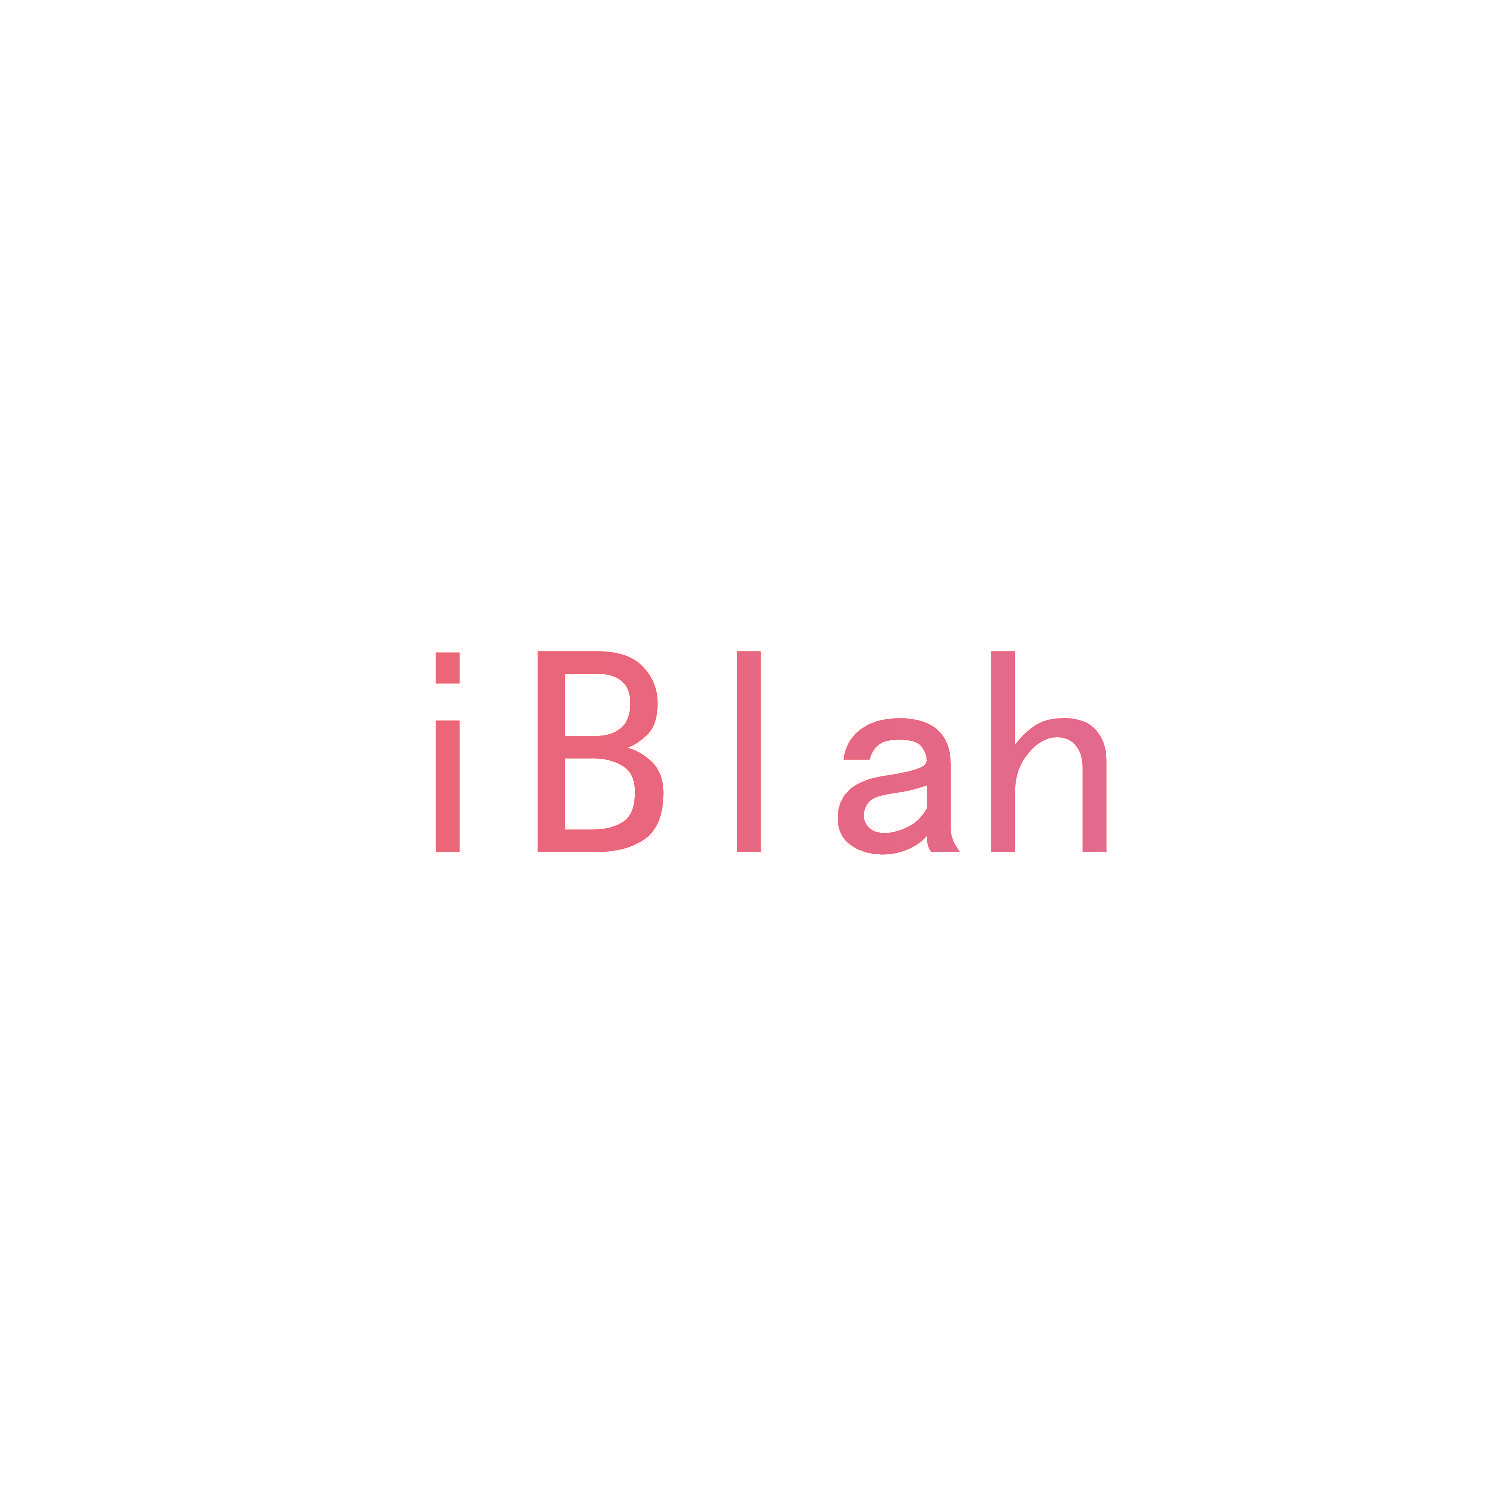 IBLAH